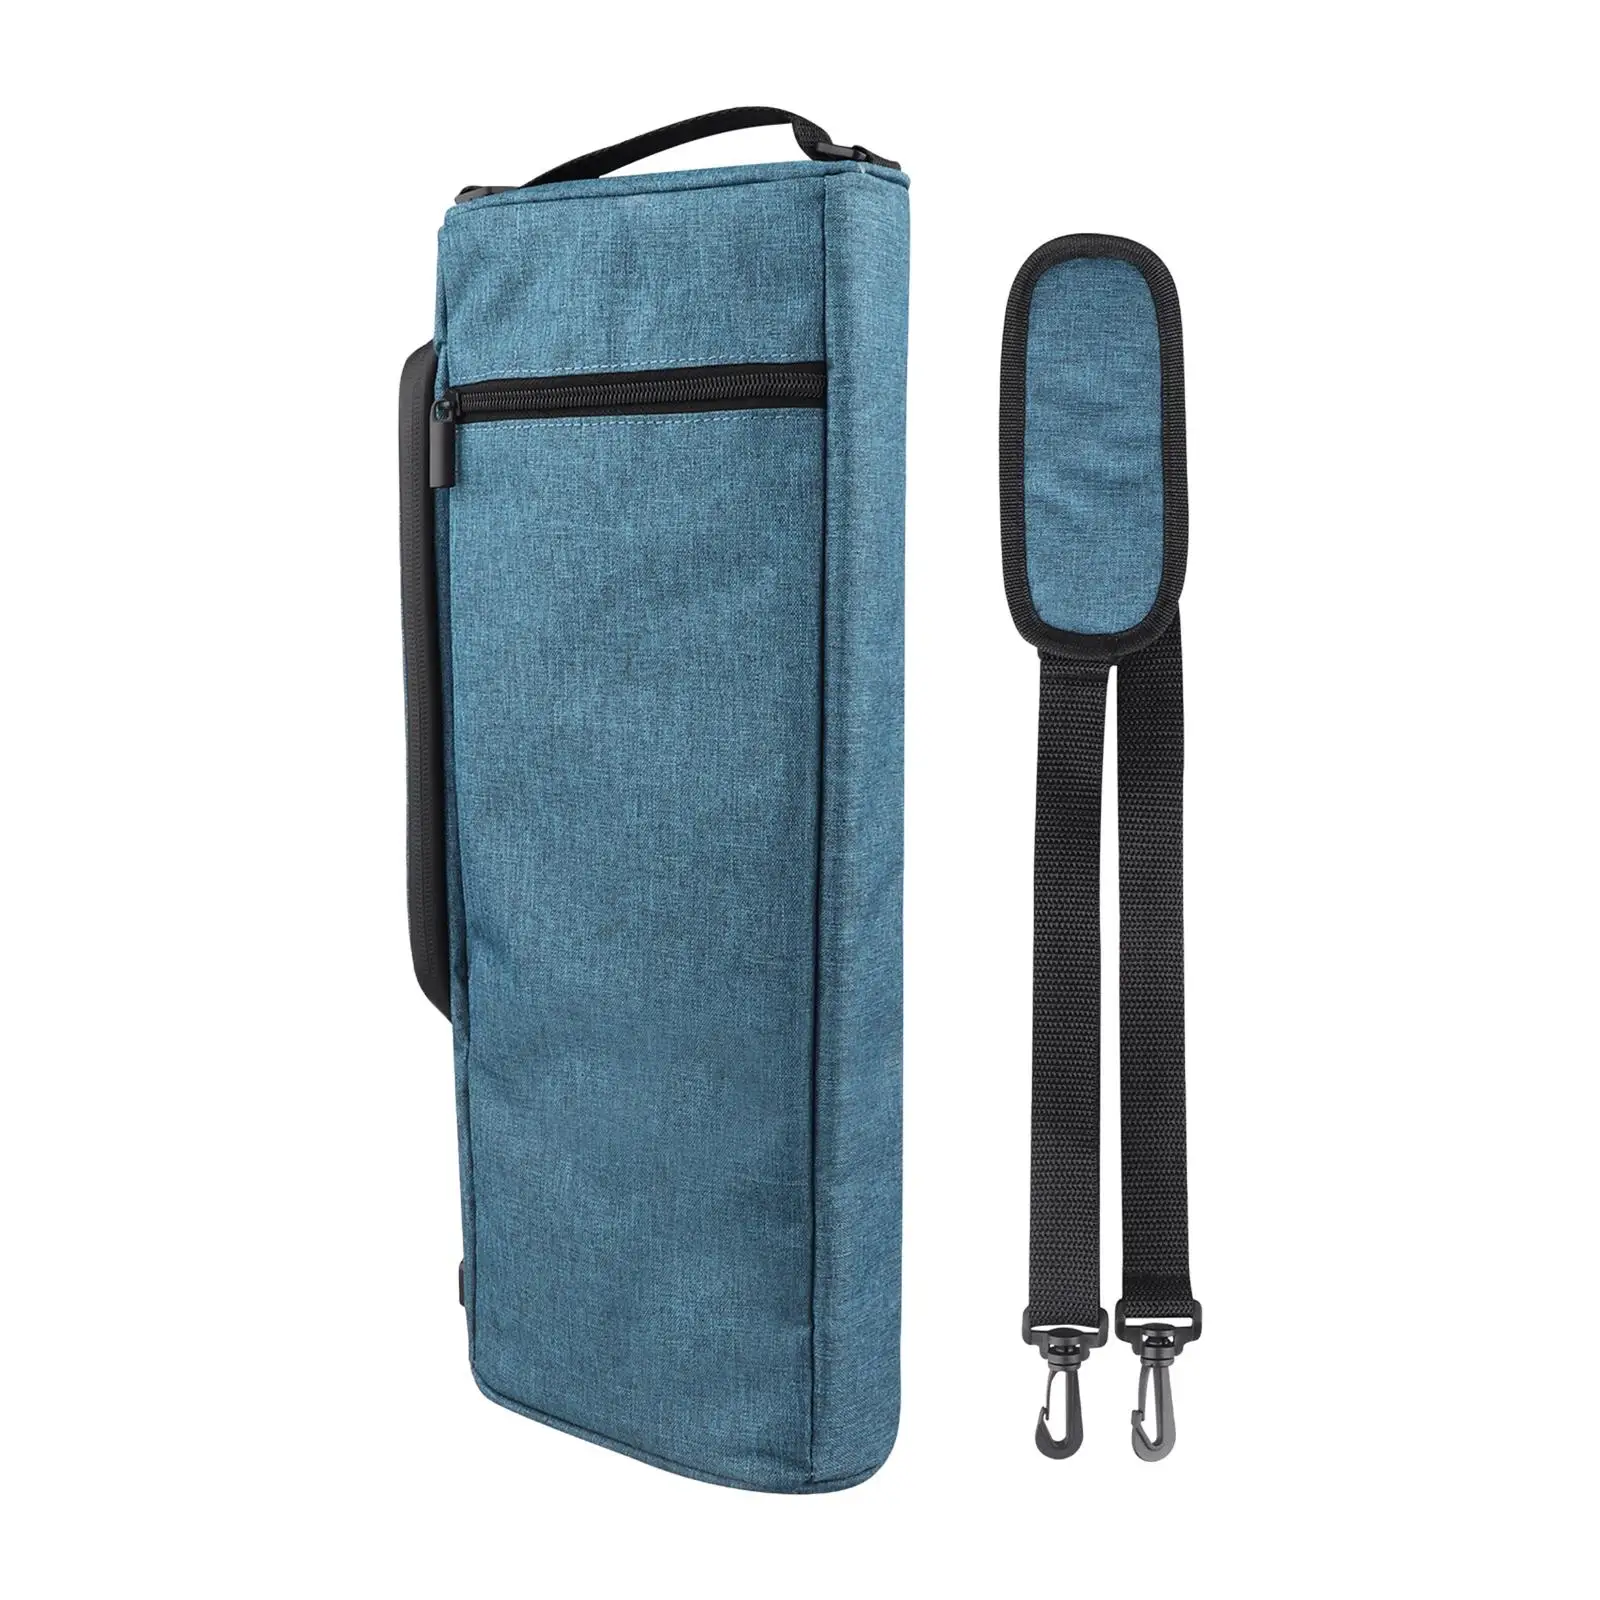 Golf Cooler Bag Adjustable Shoulder Strap Water Resistant Front Zippered Pocket for Travel